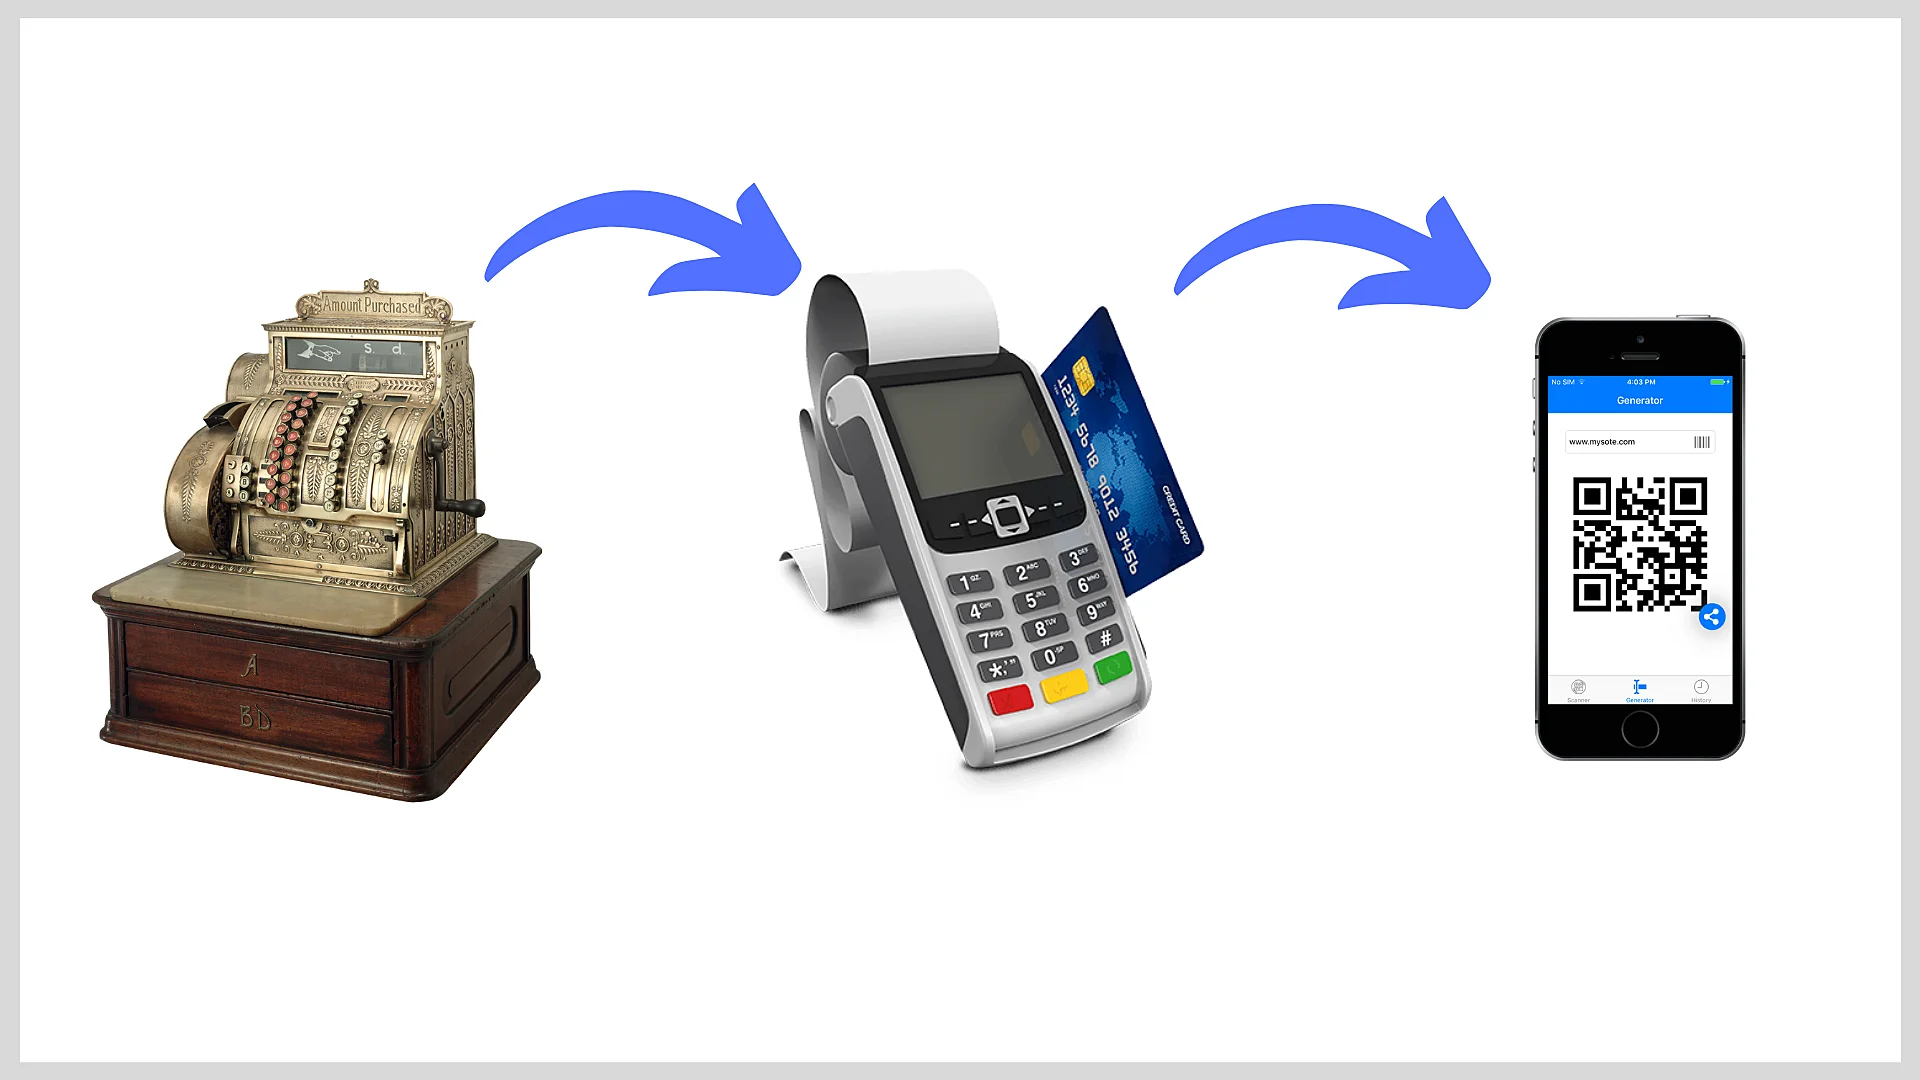 Evolution of cash registers